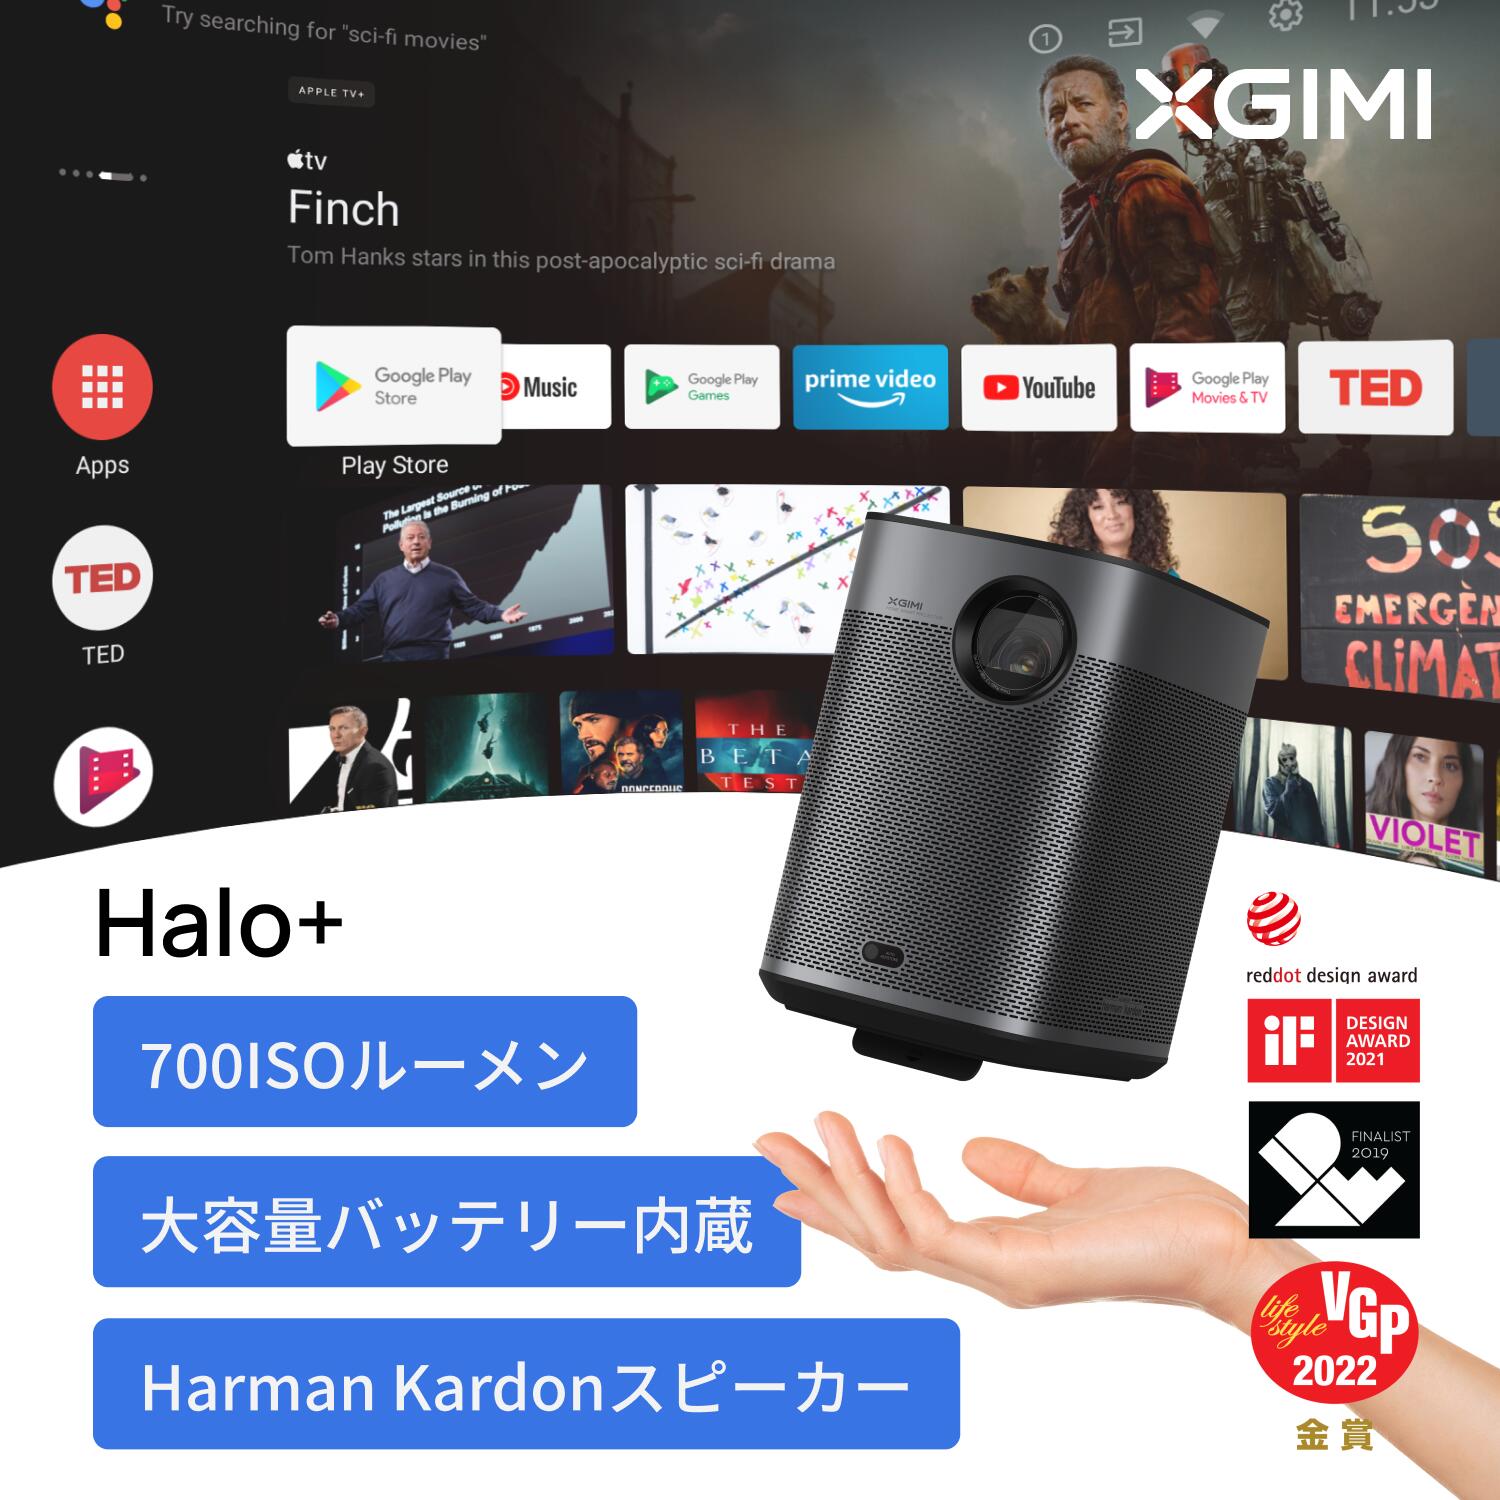 XGIMI Halo+ モバイルプロジェクター フルHD 1080p Android TV 10.0搭載 【Harman Kardonスピーカー / オートフォーカス / 自動台形補正 / bluetooth対応 / HDR10 / 低遅延 】